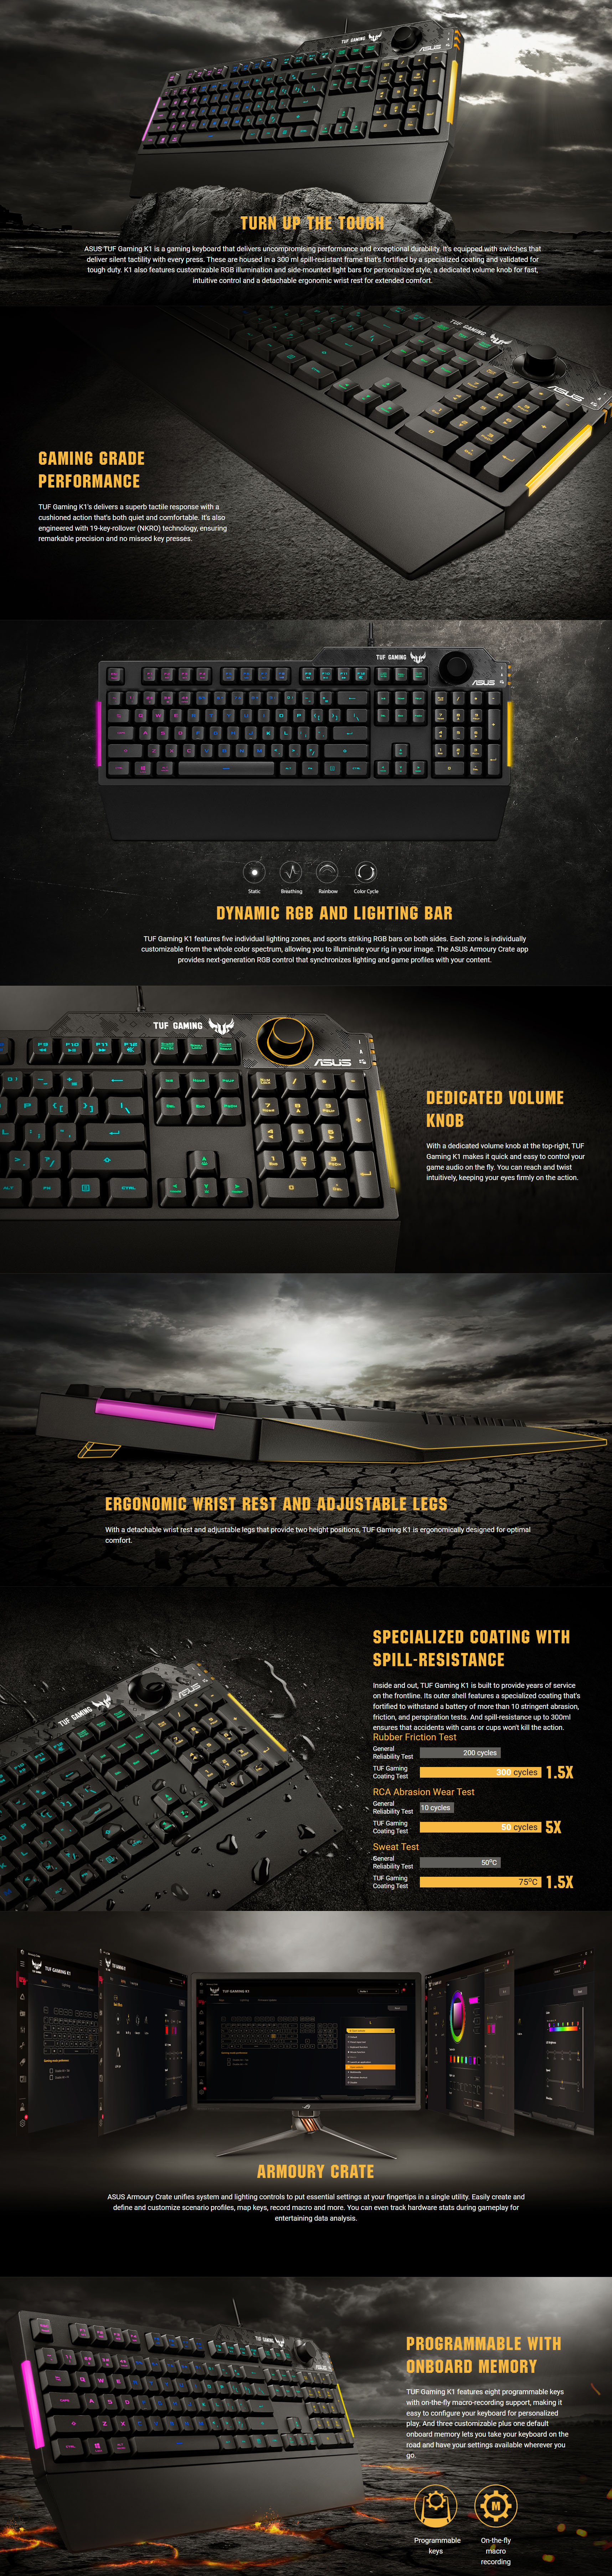 Keyboards-Asus-TUF-Gaming-K1-RGB-Gaming-Keyboard-1